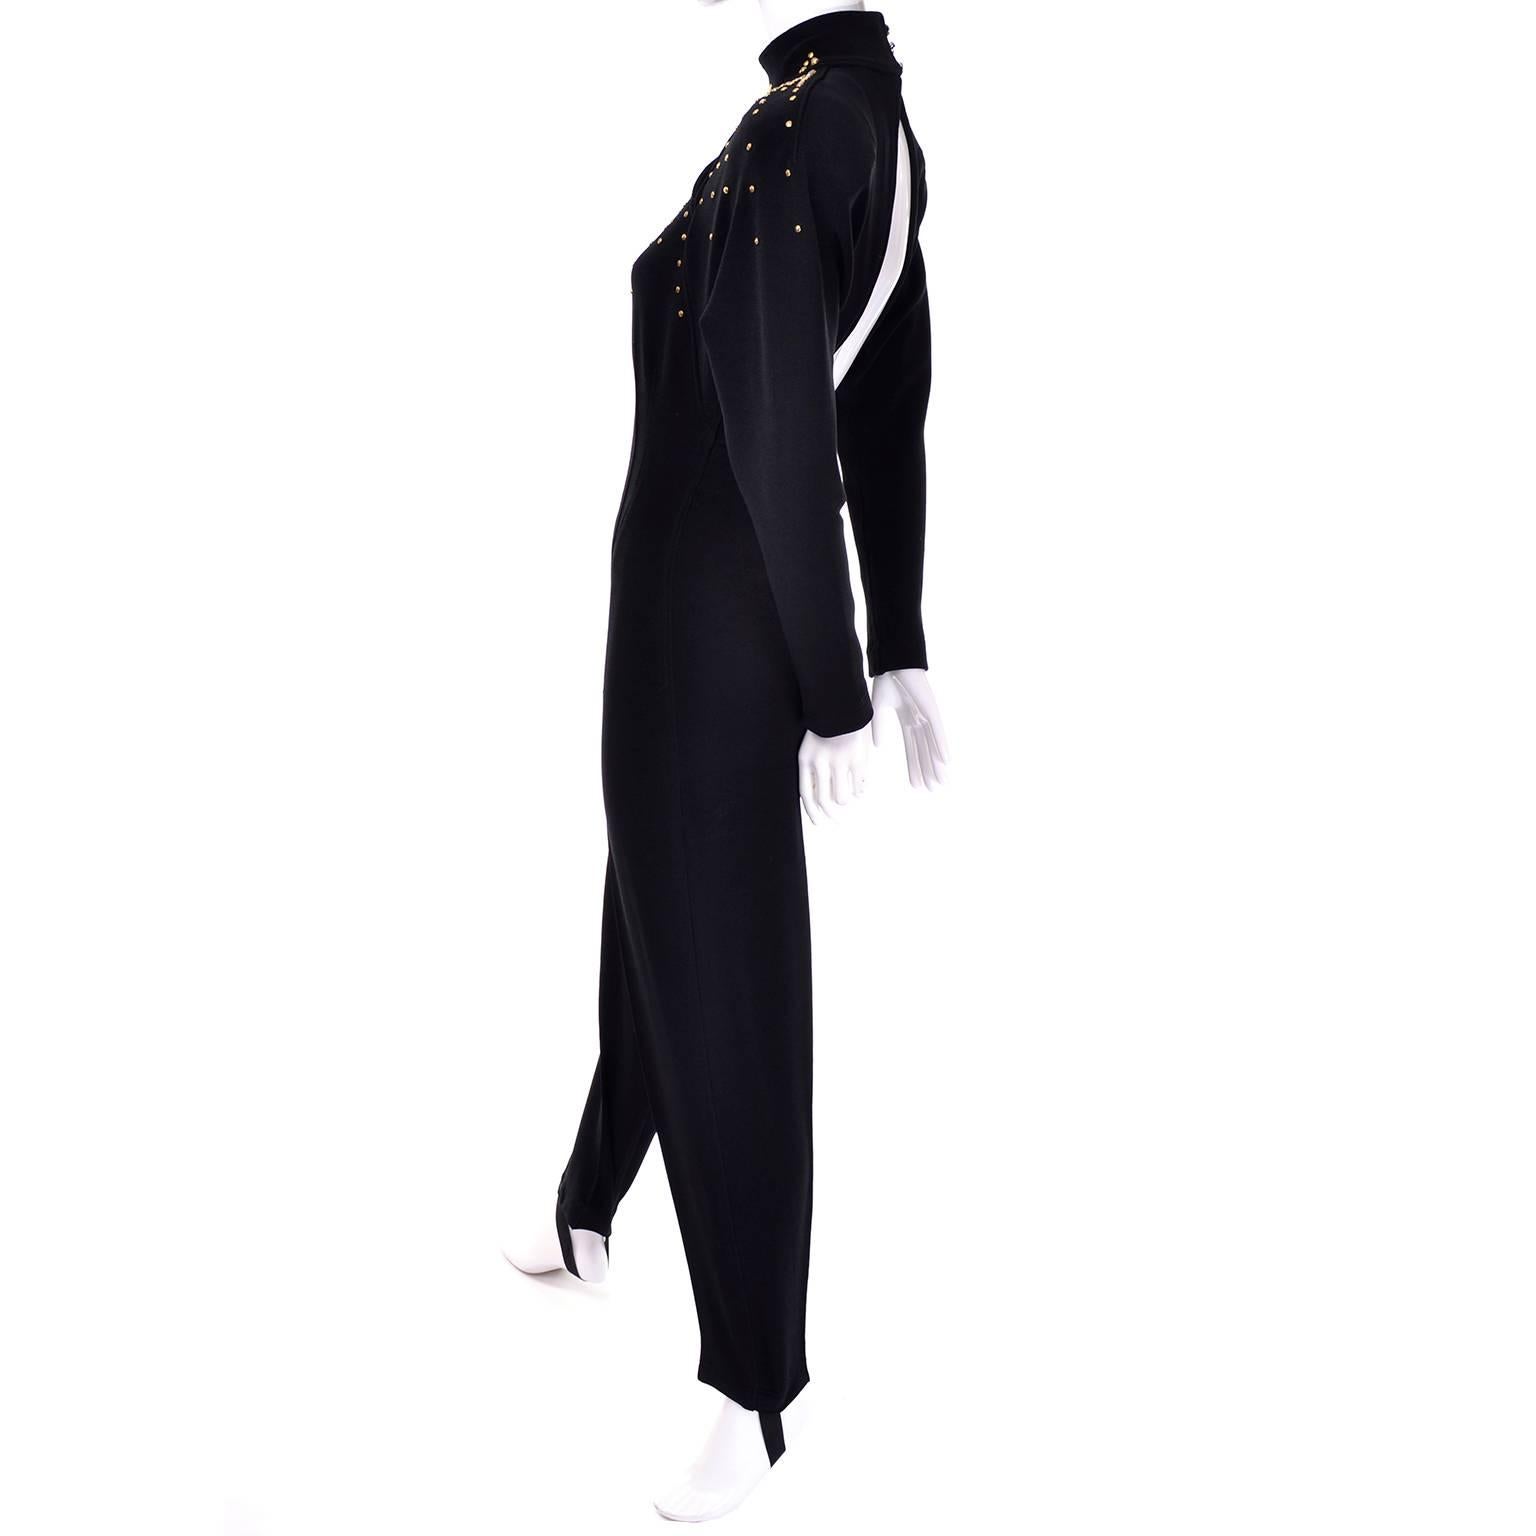 Black Studded Tadashi Vintage Jumpsuit Stirrups Keyhole Openings Medium